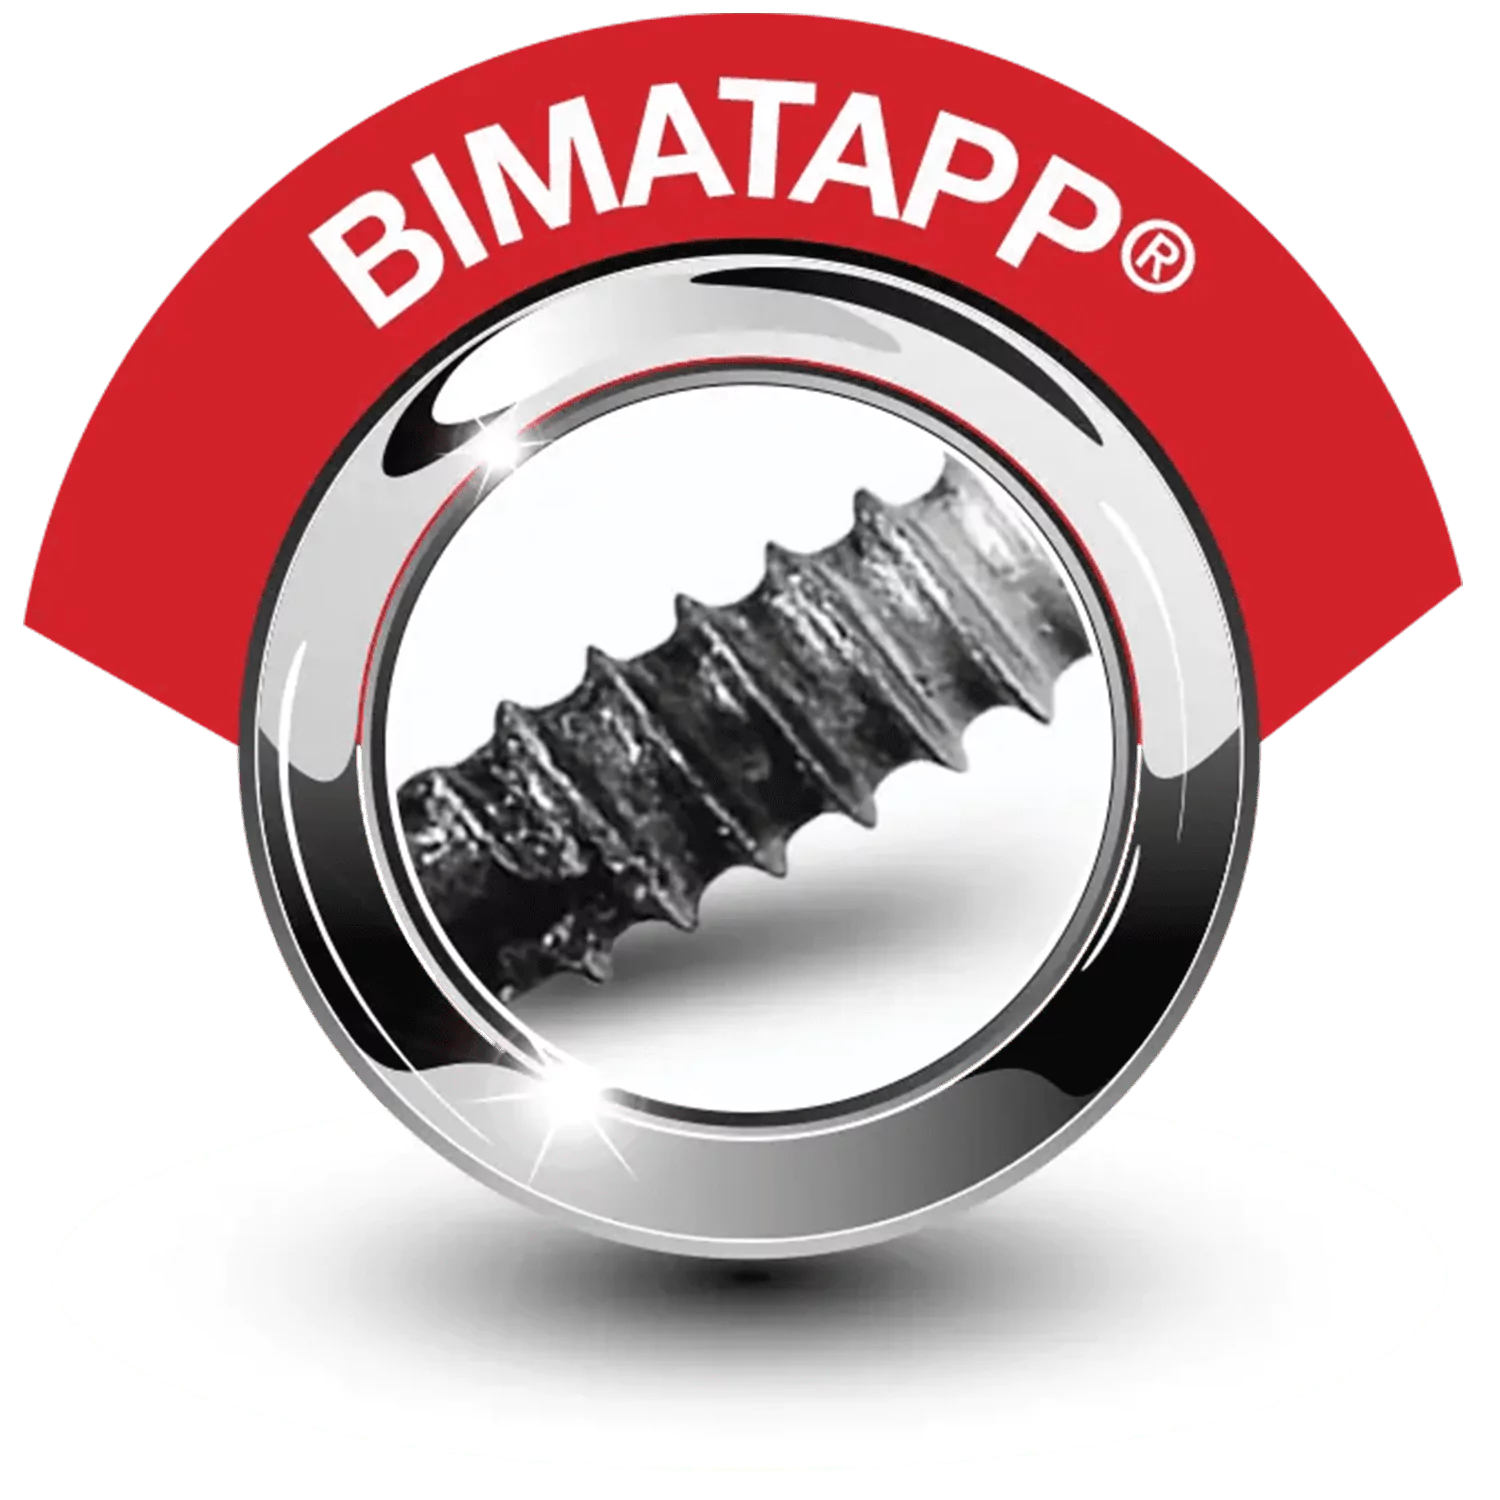 Bimatapp